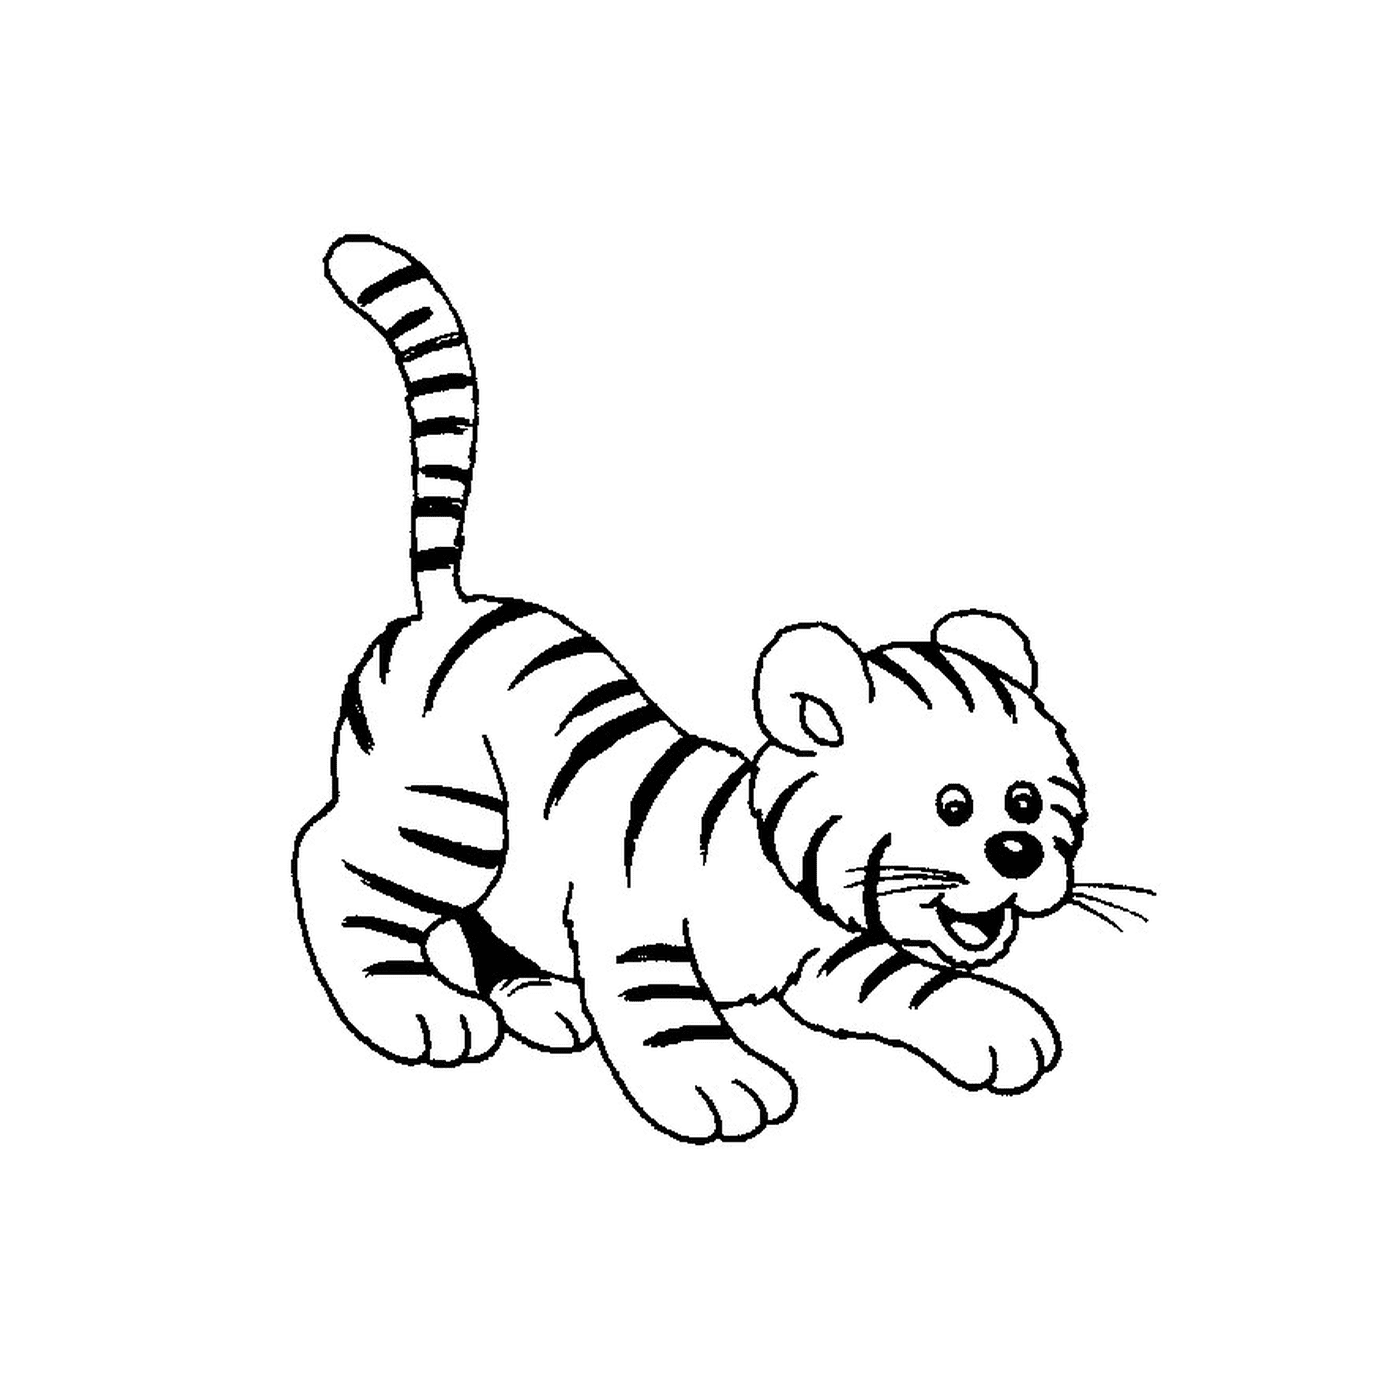  一只婴儿老虎 